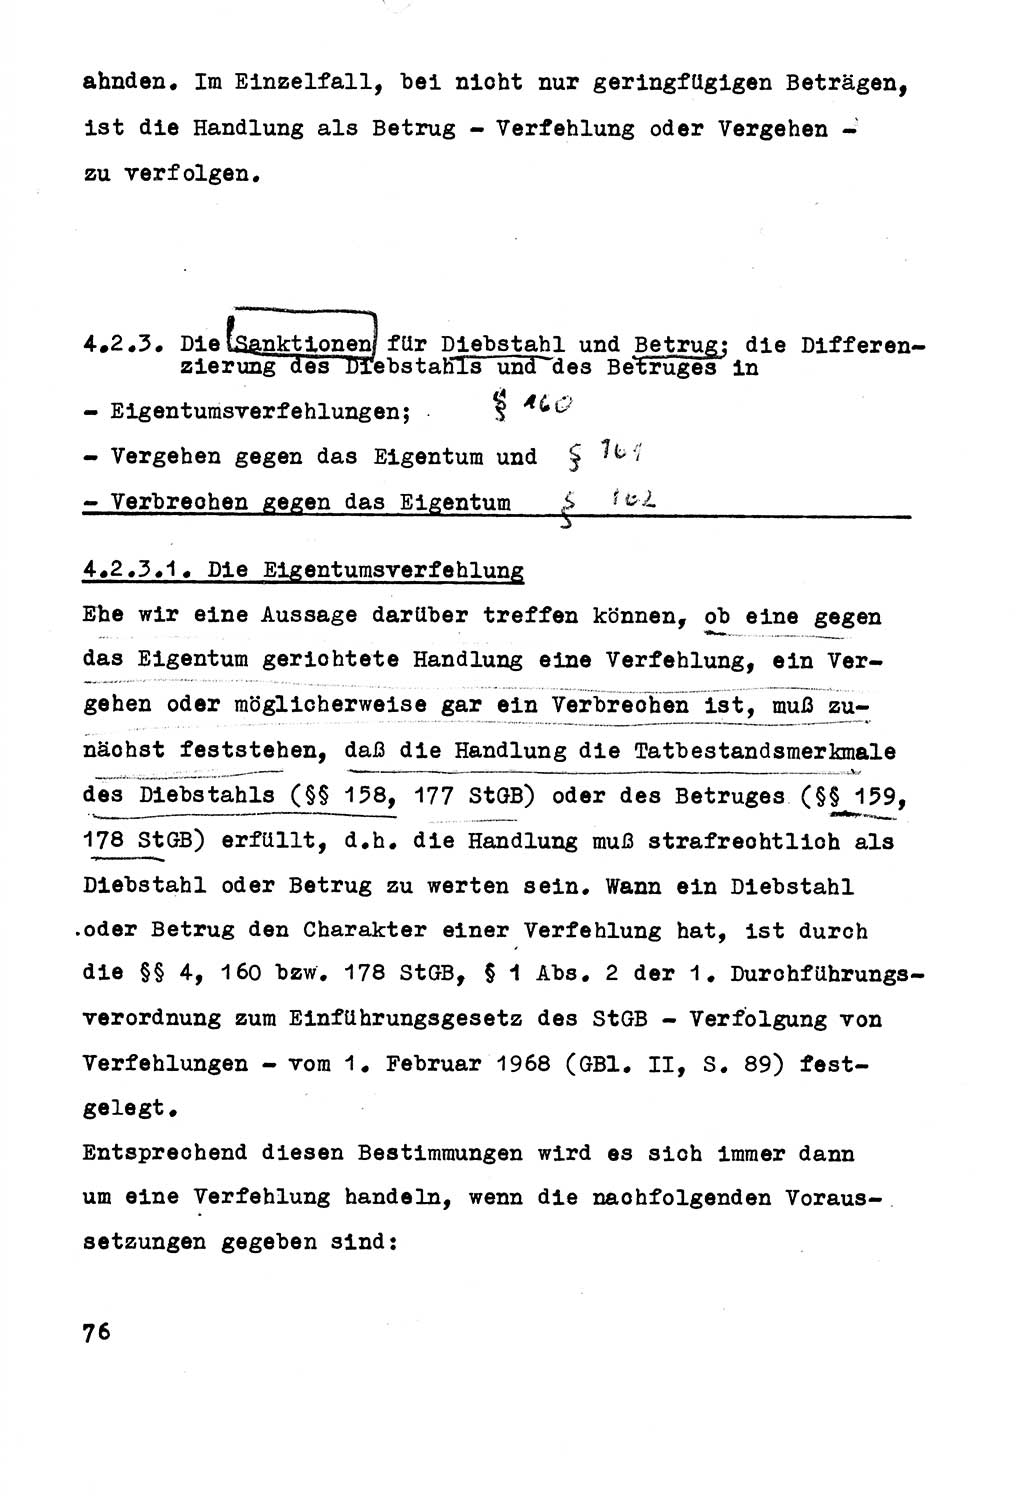 Strafrecht der DDR (Deutsche Demokratische Republik), Besonderer Teil, Lehrmaterial, Heft 5 1970, Seite 76 (Strafr. DDR BT Lehrmat. H. 5 1970, S. 76)